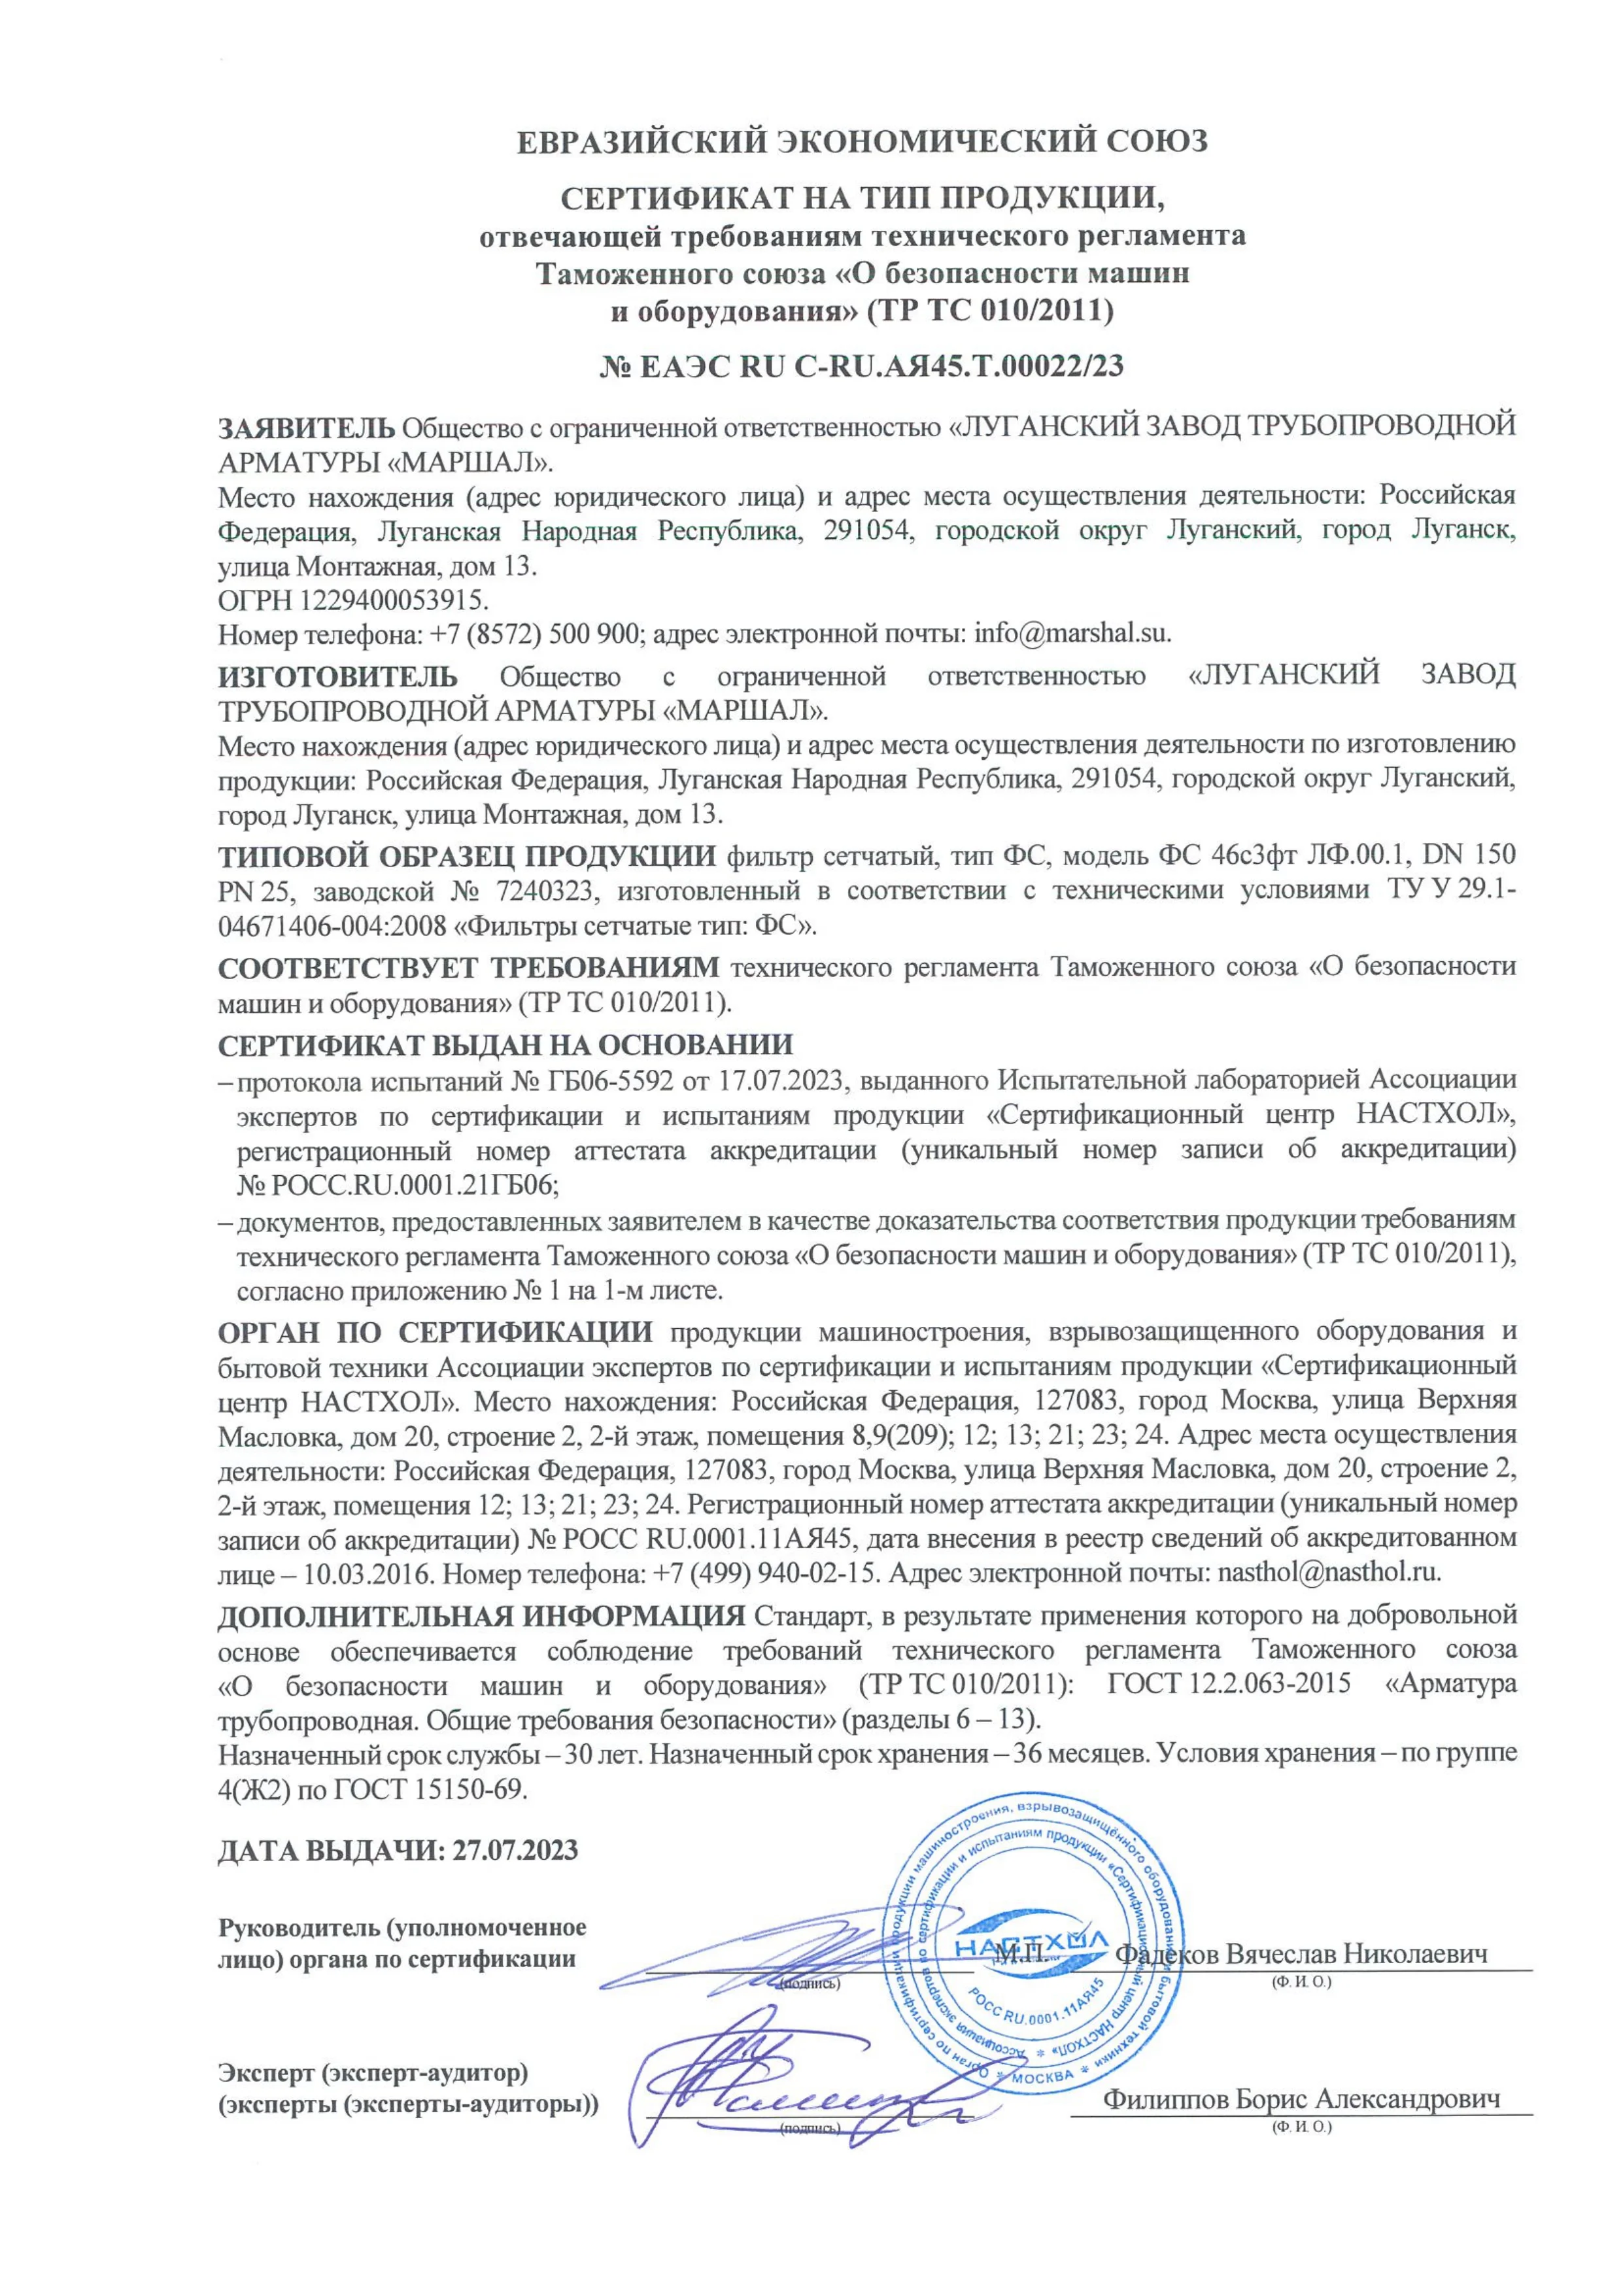 Сертификат соответствии  требованиям ТР ТС 010/2011 на фильтры сетчатые тип ФС